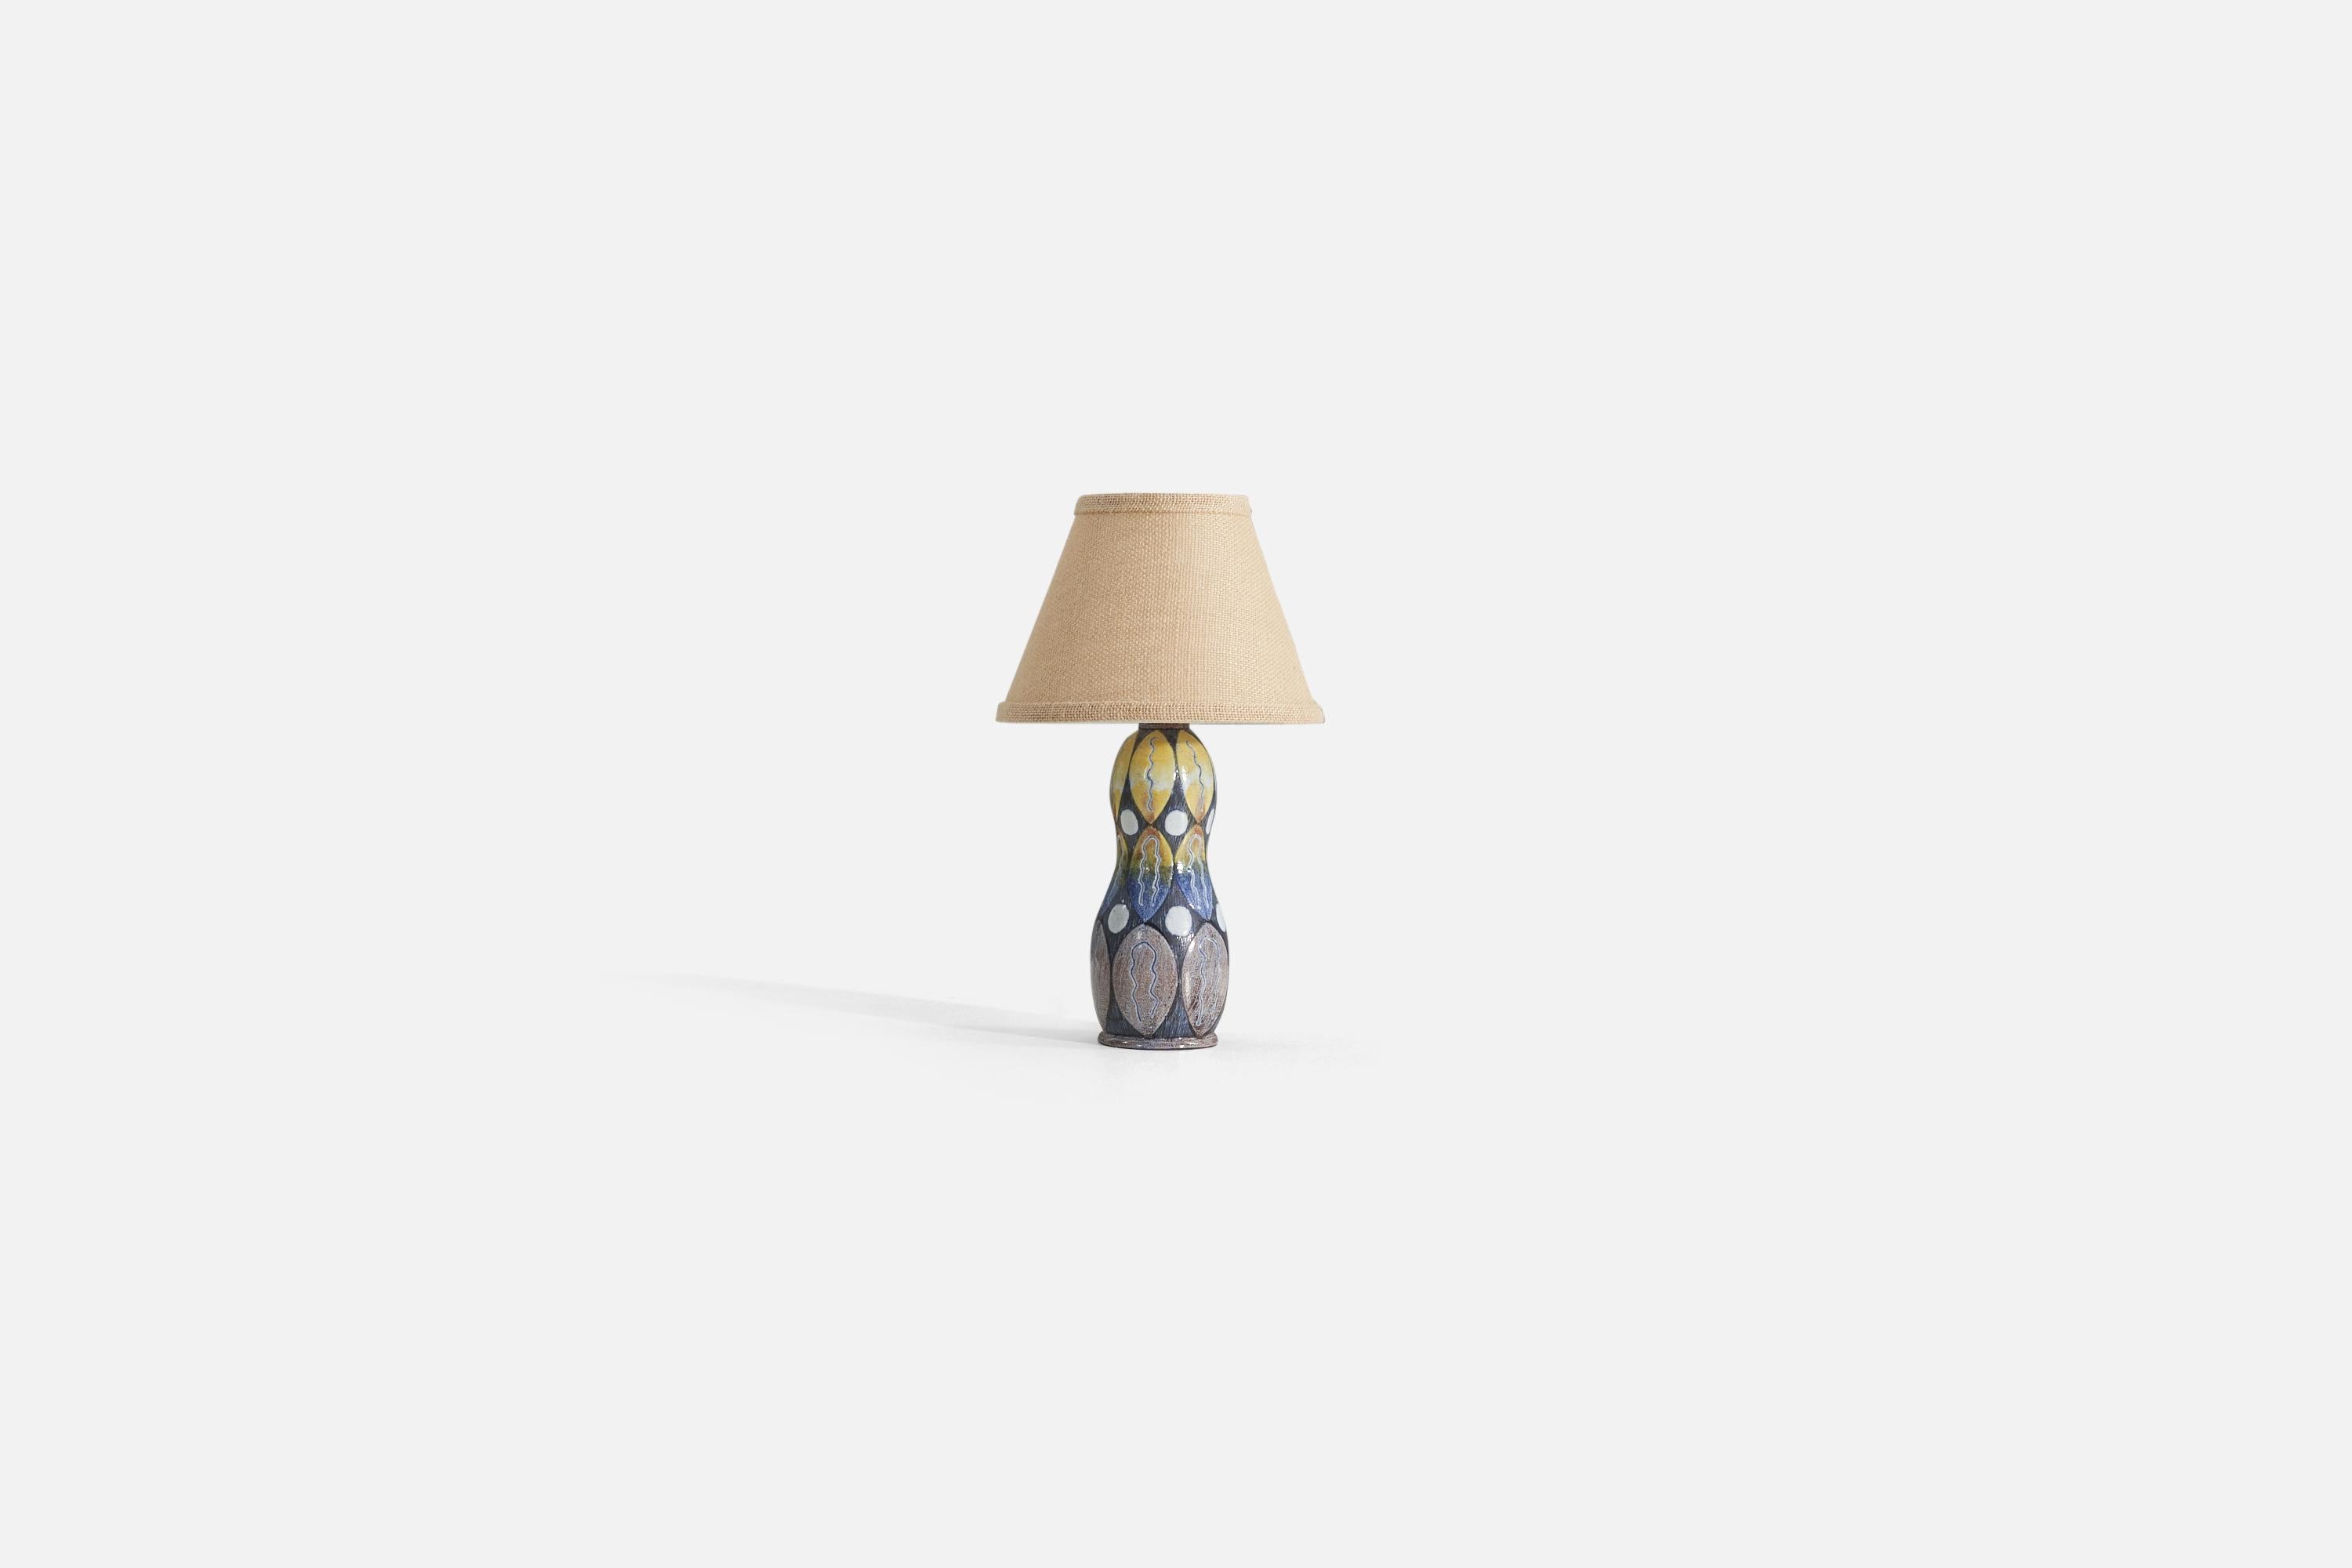 Tischlampe aus braunem und blau glasiertem Steingut, hergestellt von Tilgmans Keramik, Schweden, 1960er Jahre. 

Verkauft ohne Lampenschirm. Die angegebenen Maße beziehen sich nur auf die Lampe. Schirm : 7 x 8 x 7 Lampe mit Schirm : 14 x 8 x 8.

